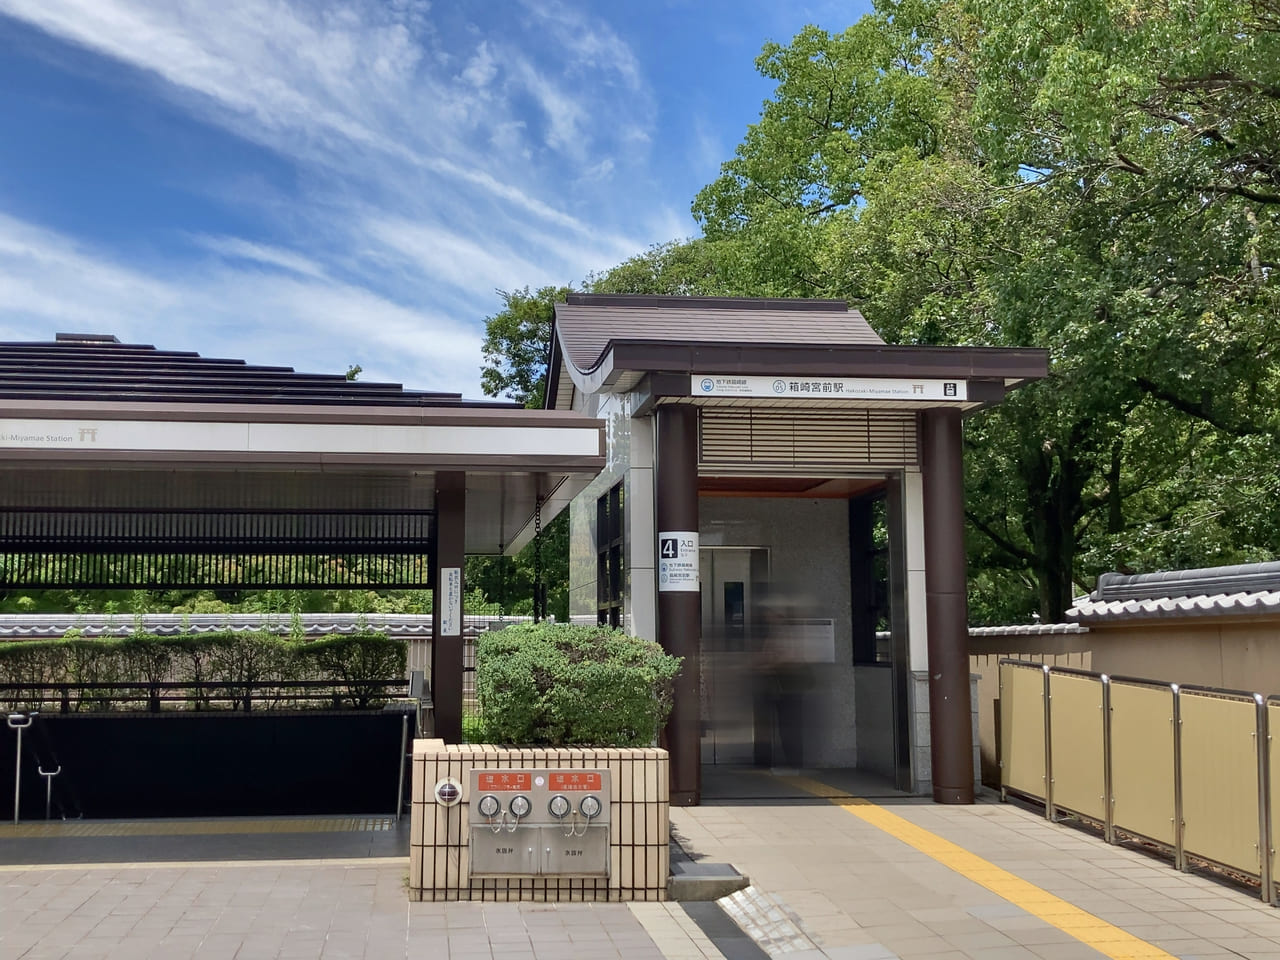 筥崎宮は、福岡市営地下鉄箱崎宮前駅近くにあります。